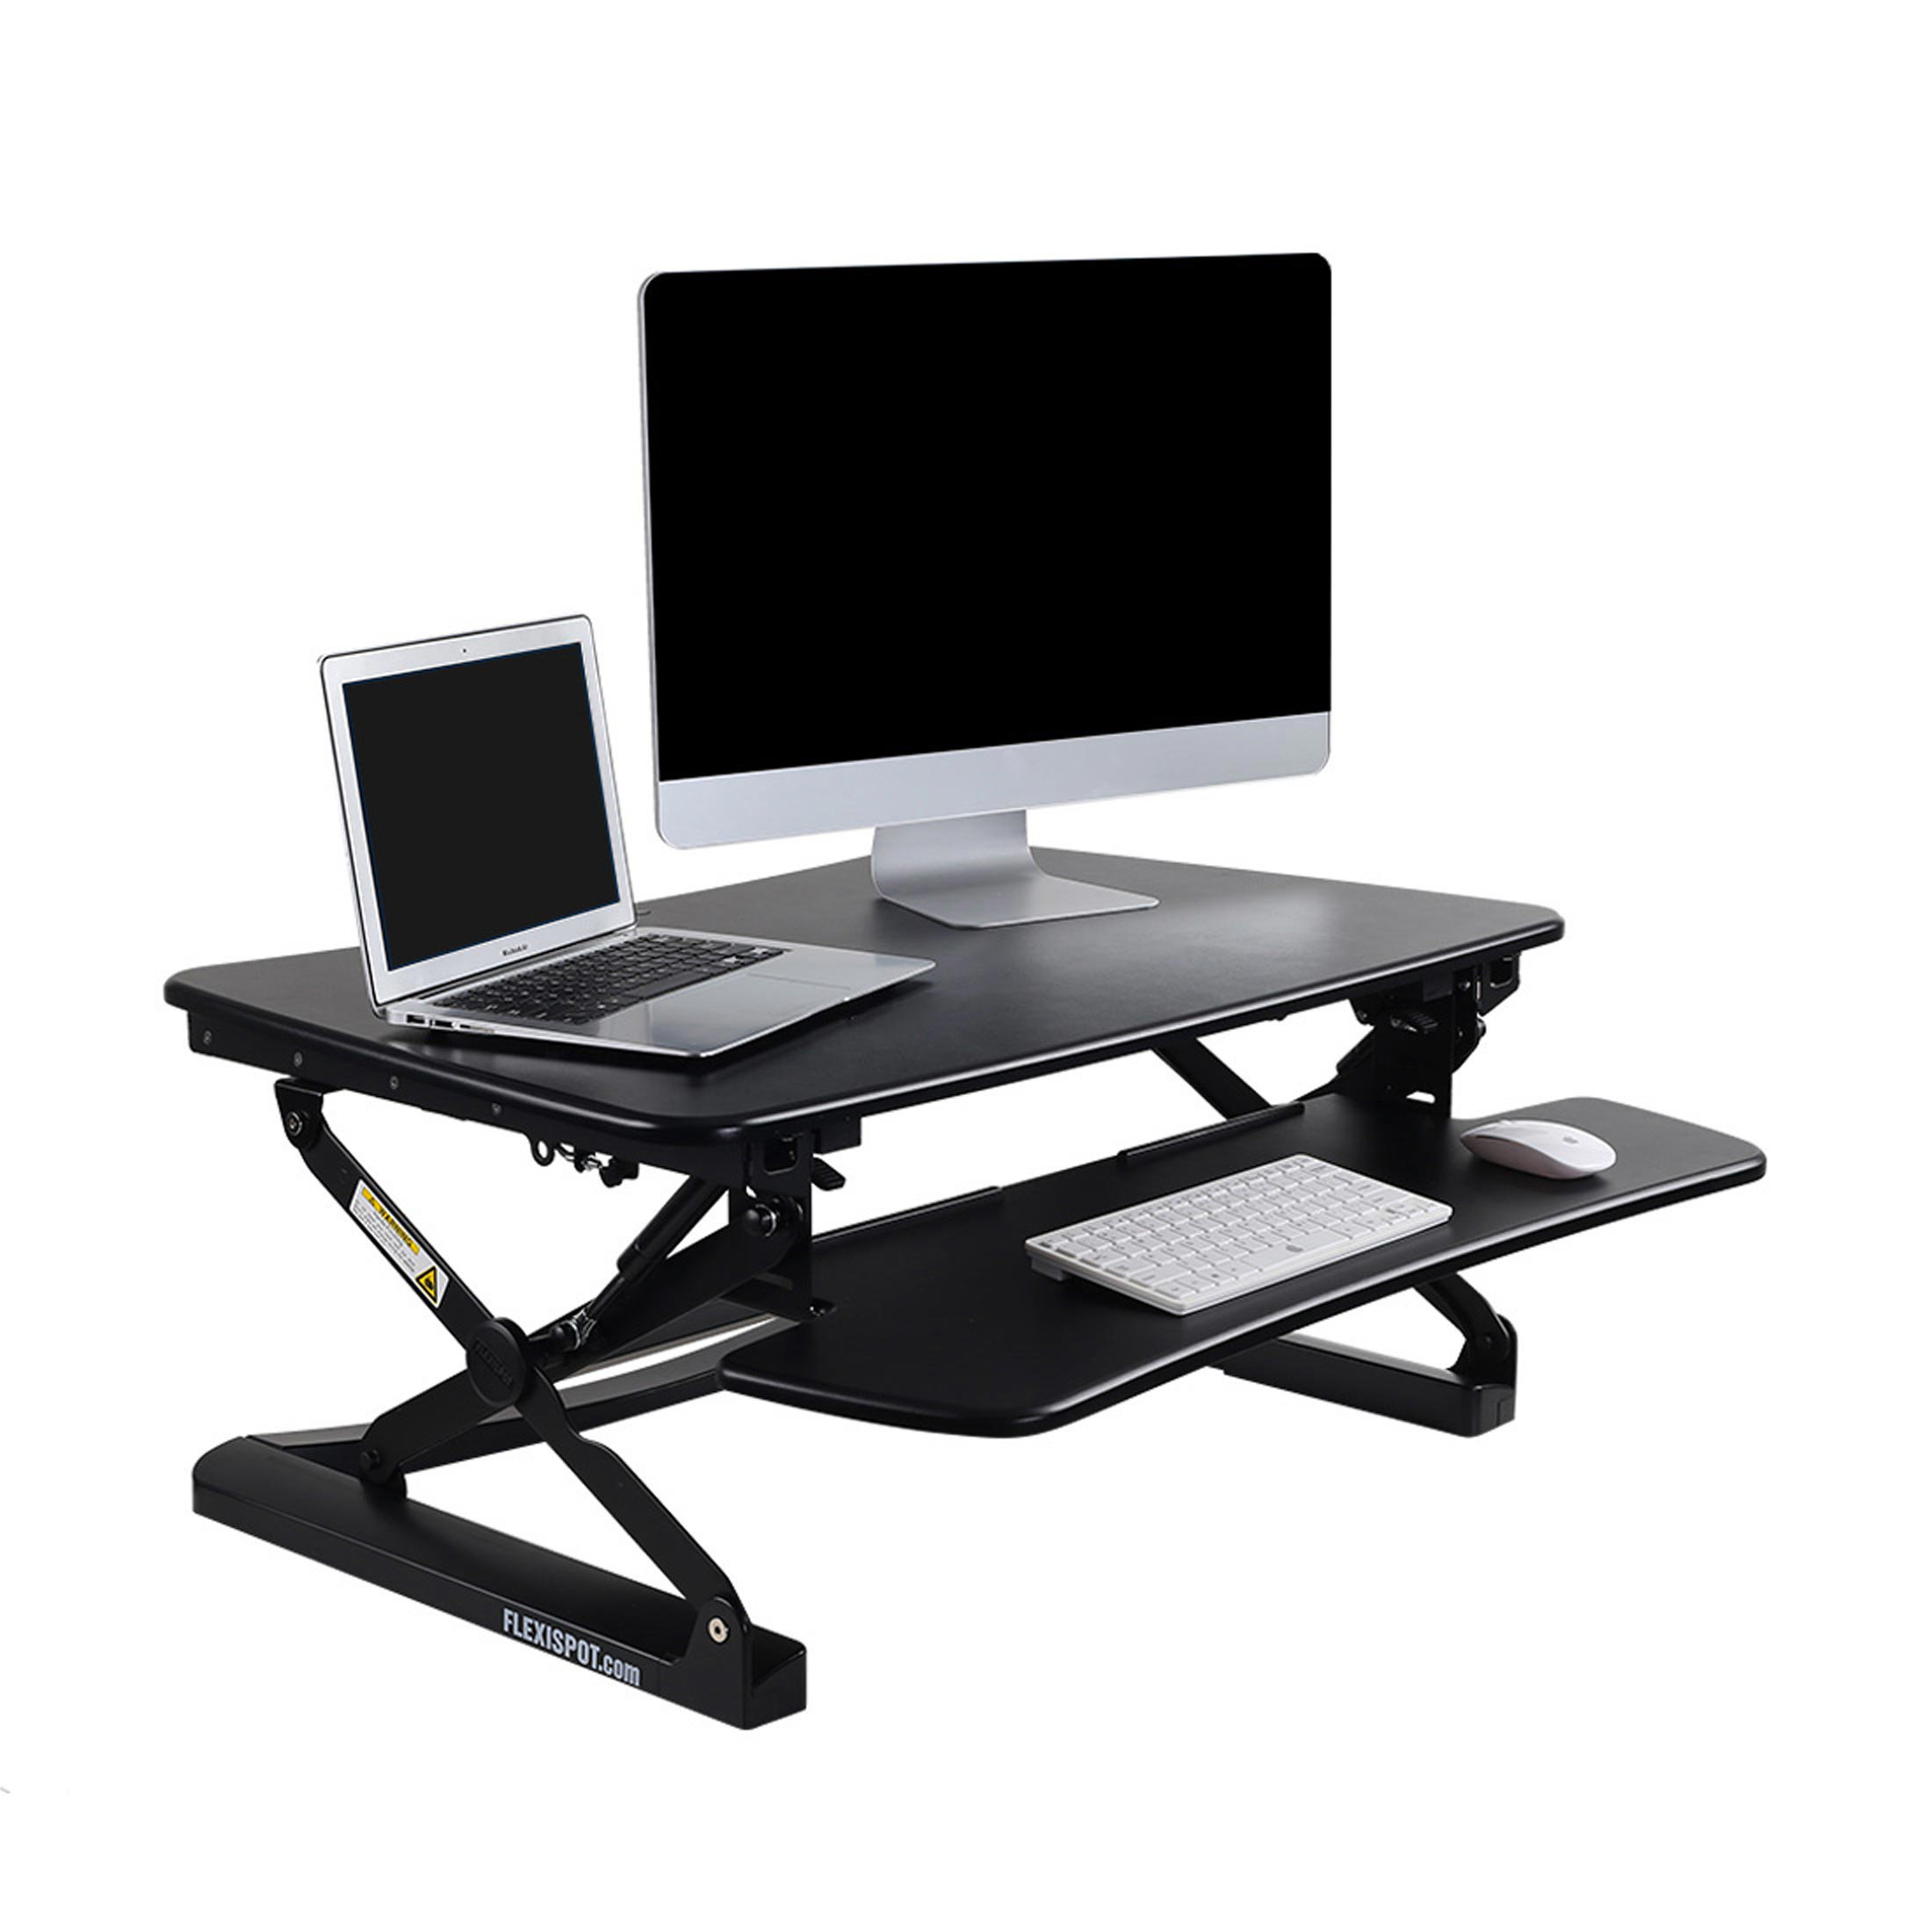 Flexispot Standing Desk Converter Reviews Wayfair